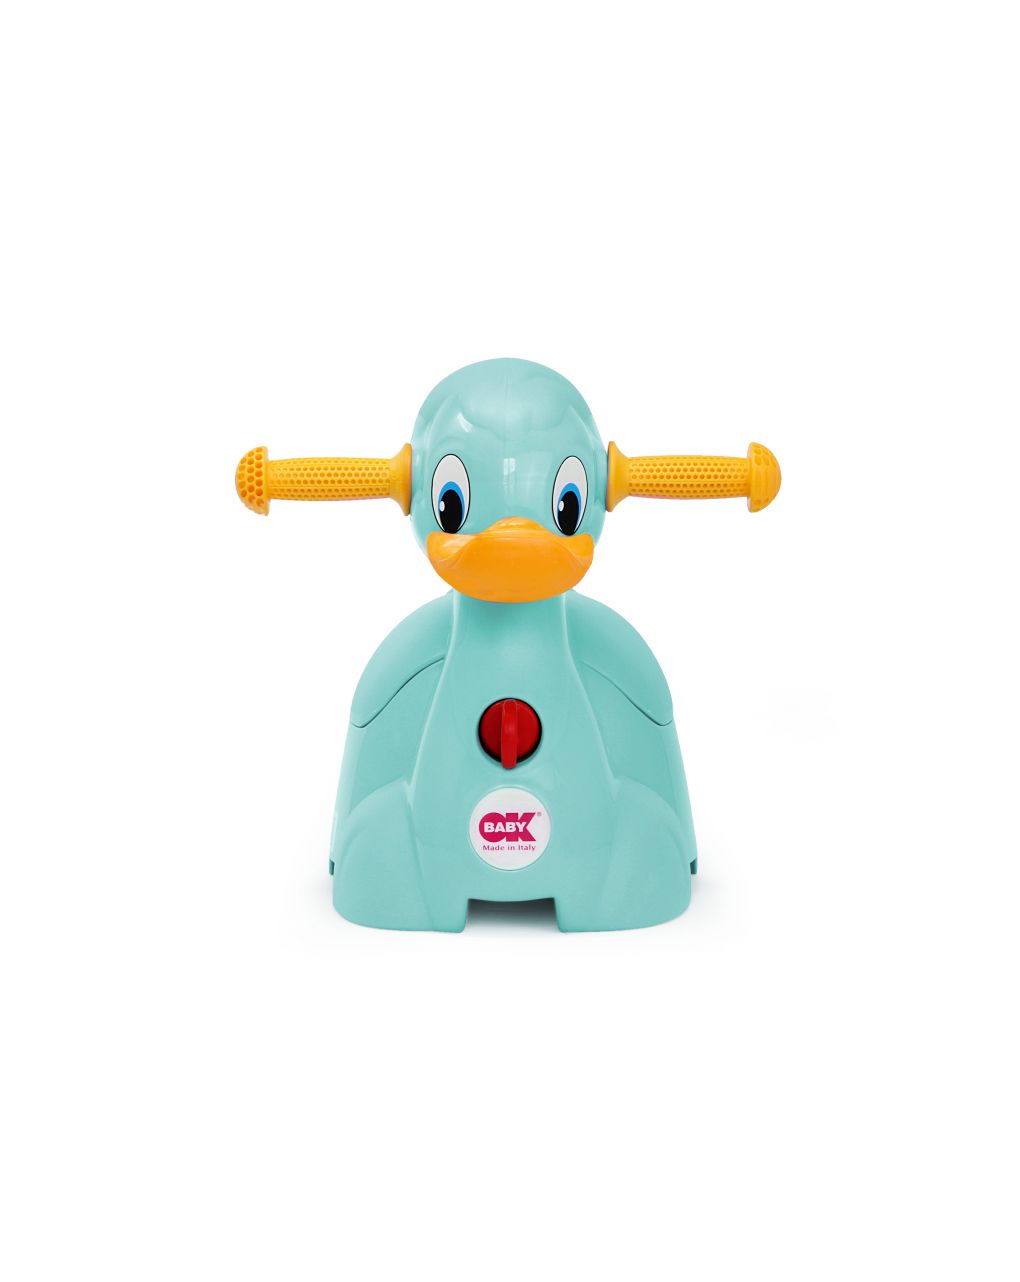 Vasino quack - OK BABY